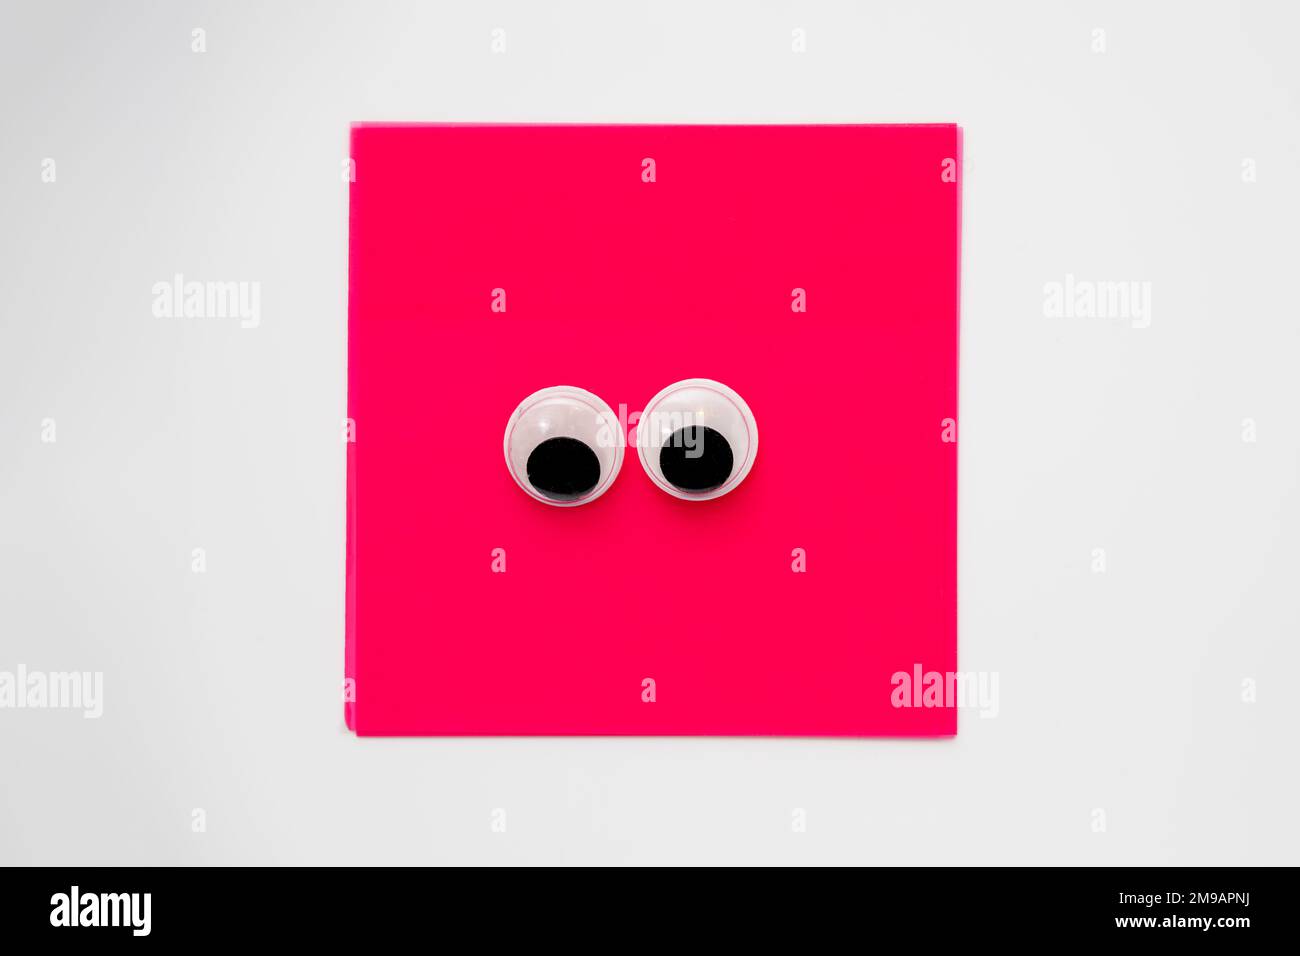 Paire de jolis yeux sur un bloc-notes carré rose isolé sur un fond blanc Banque D'Images